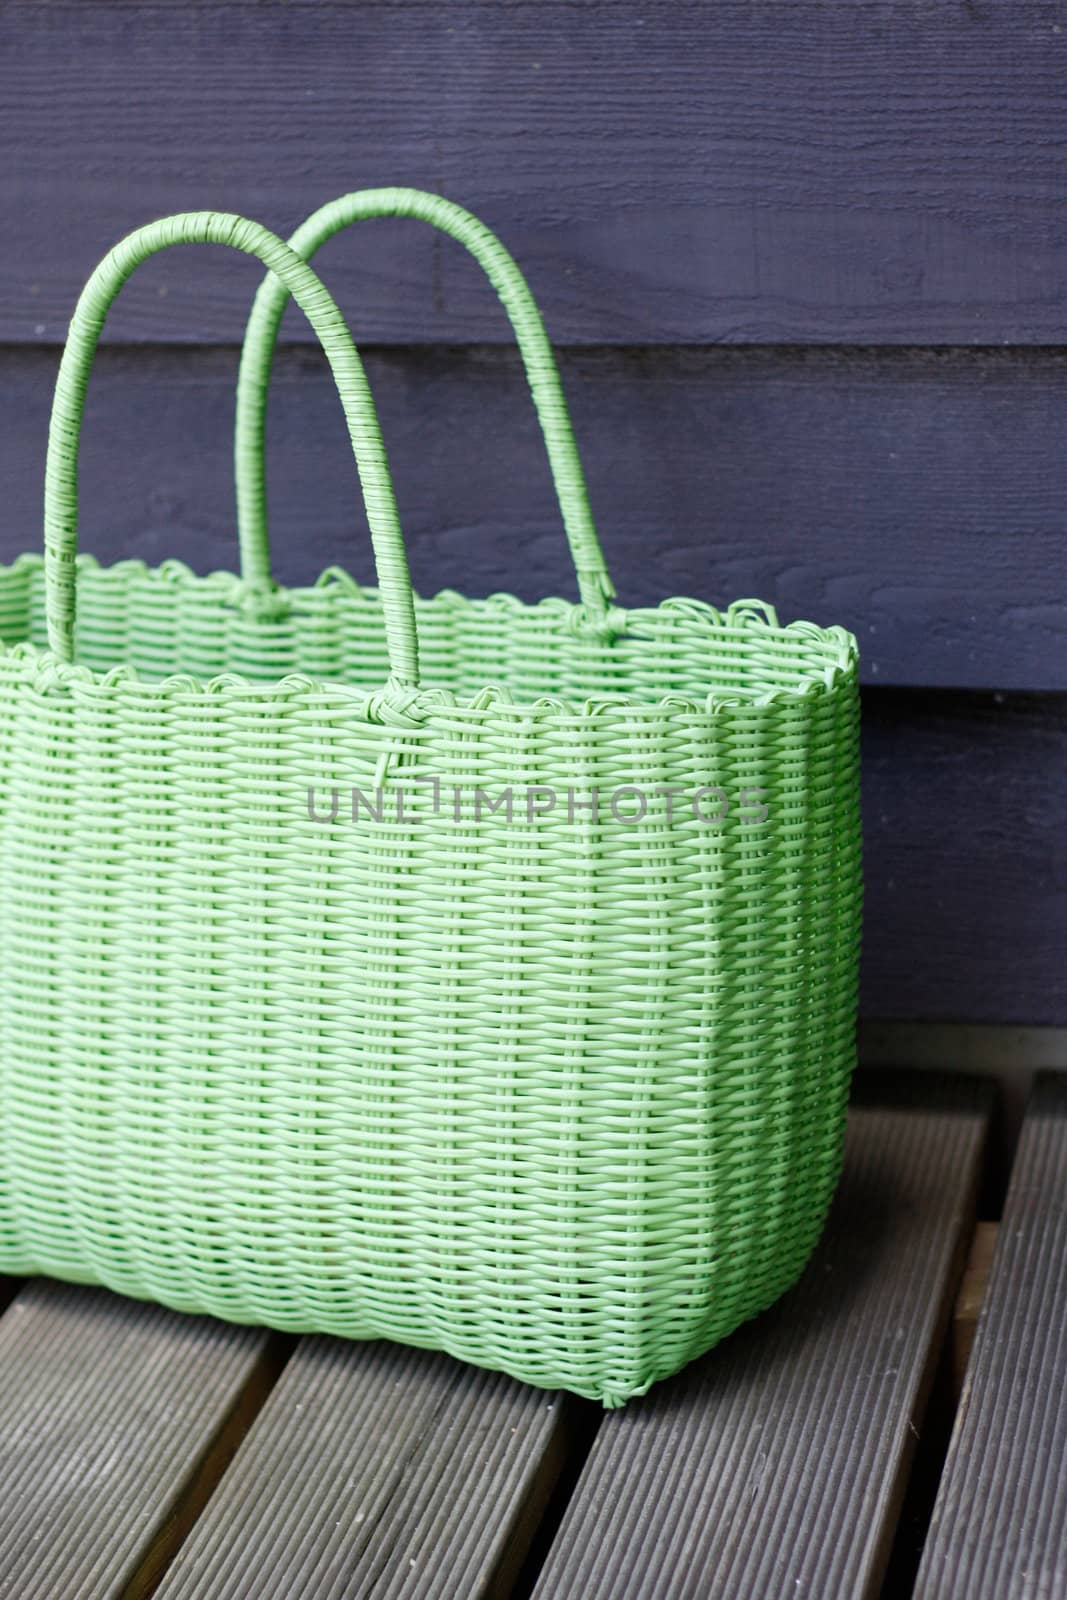 Green beach bag by leeser